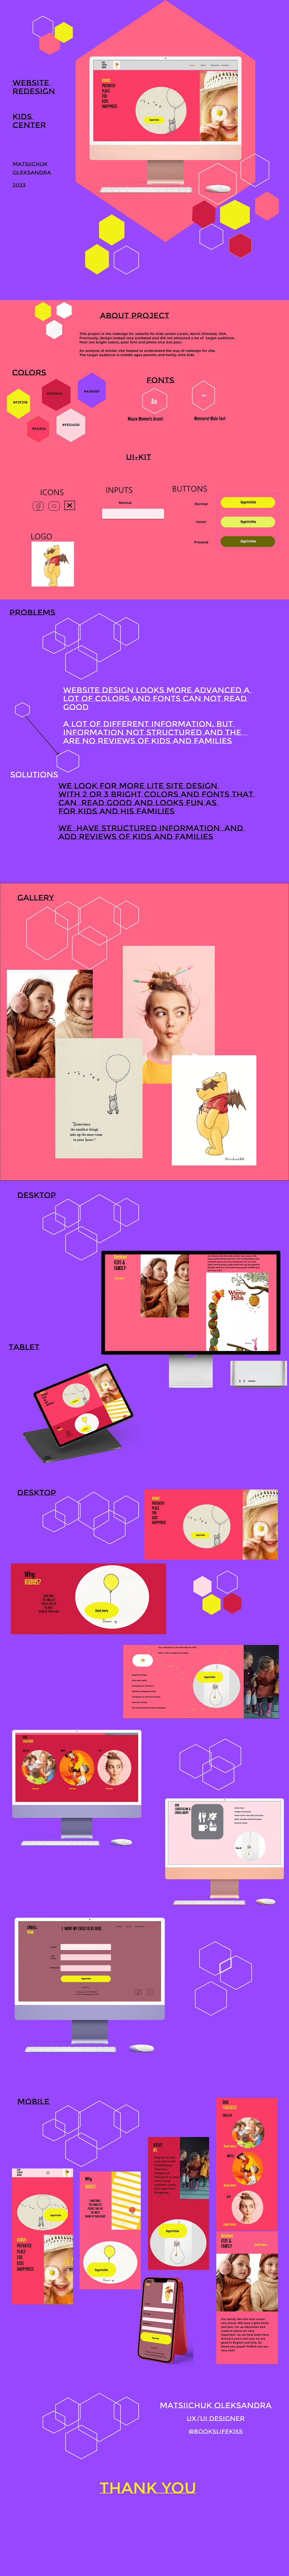 UX design UI/UX Website design kids web design uxdesign Webdesign user interface Mobile app